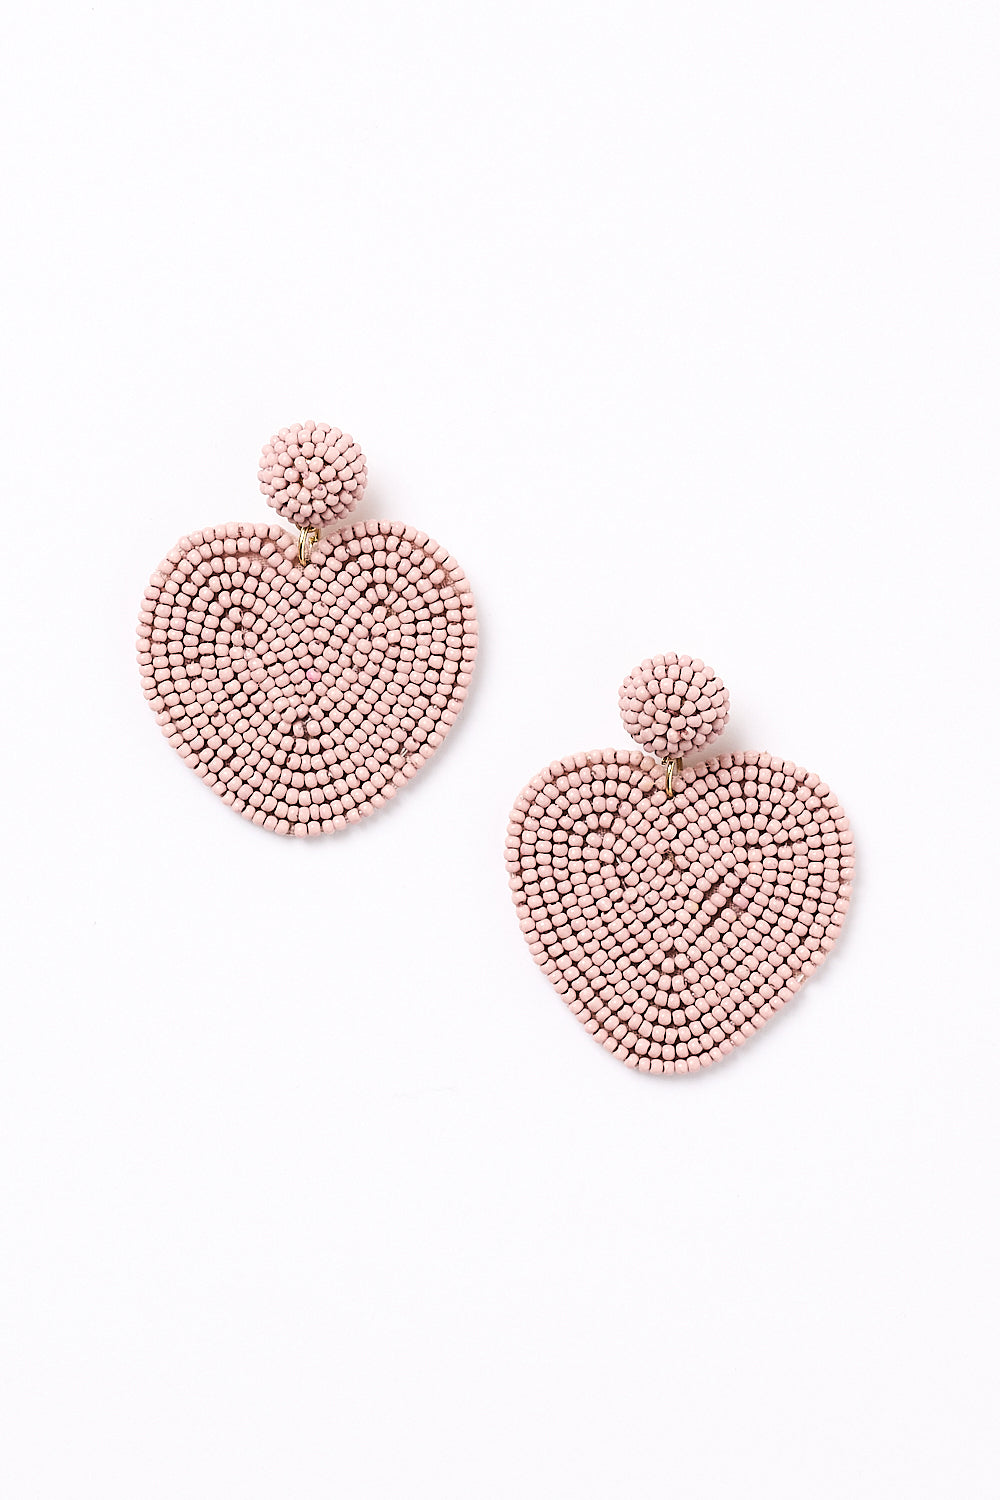 Beaded Heart Earrings in Dusty Pink